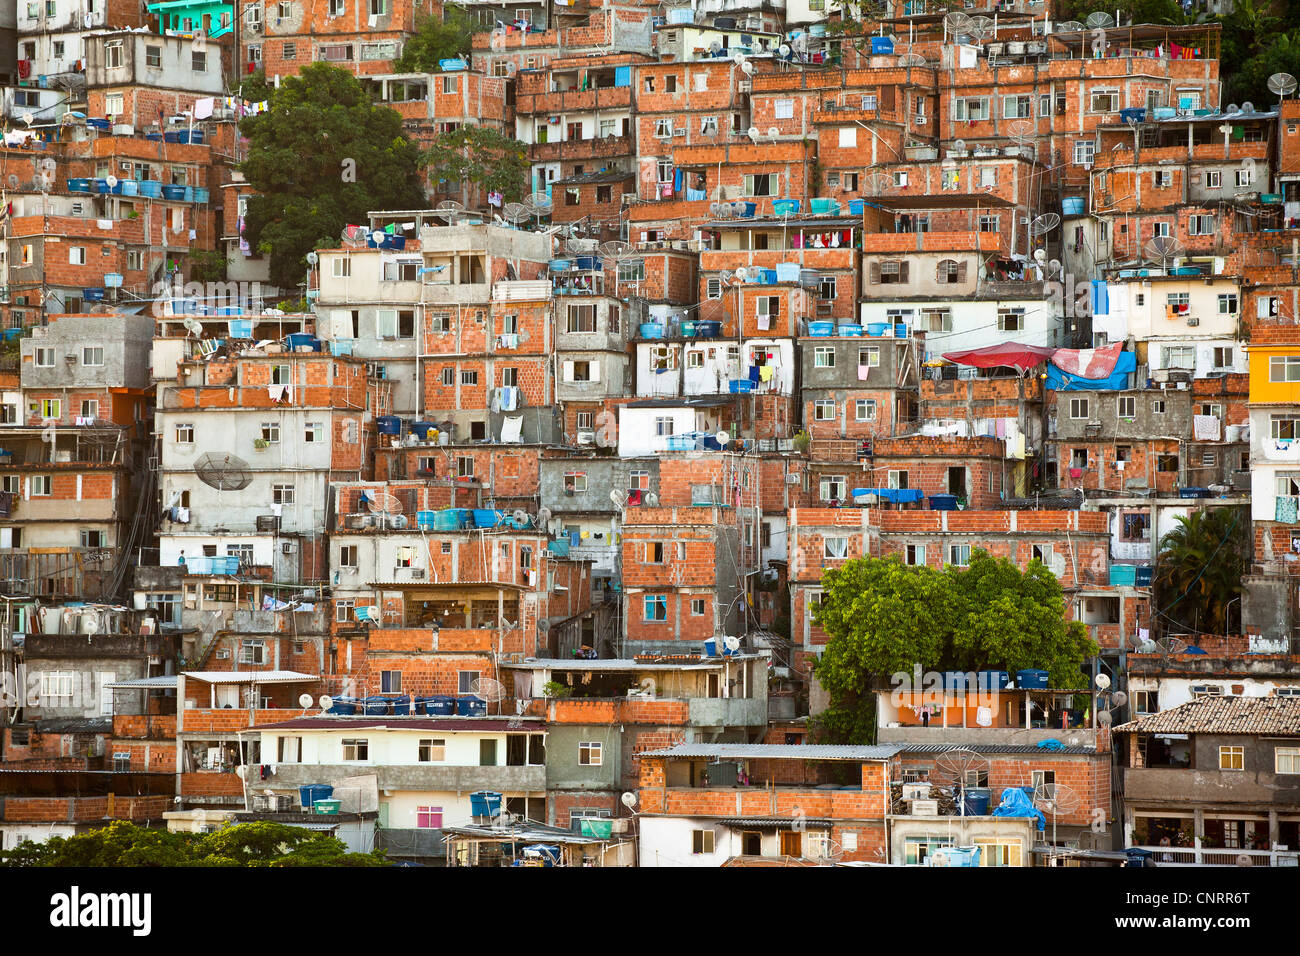 Favela Pavao Pavaozinho in Copacabana, Rio de Janeiro, Brazil. Stock Photo